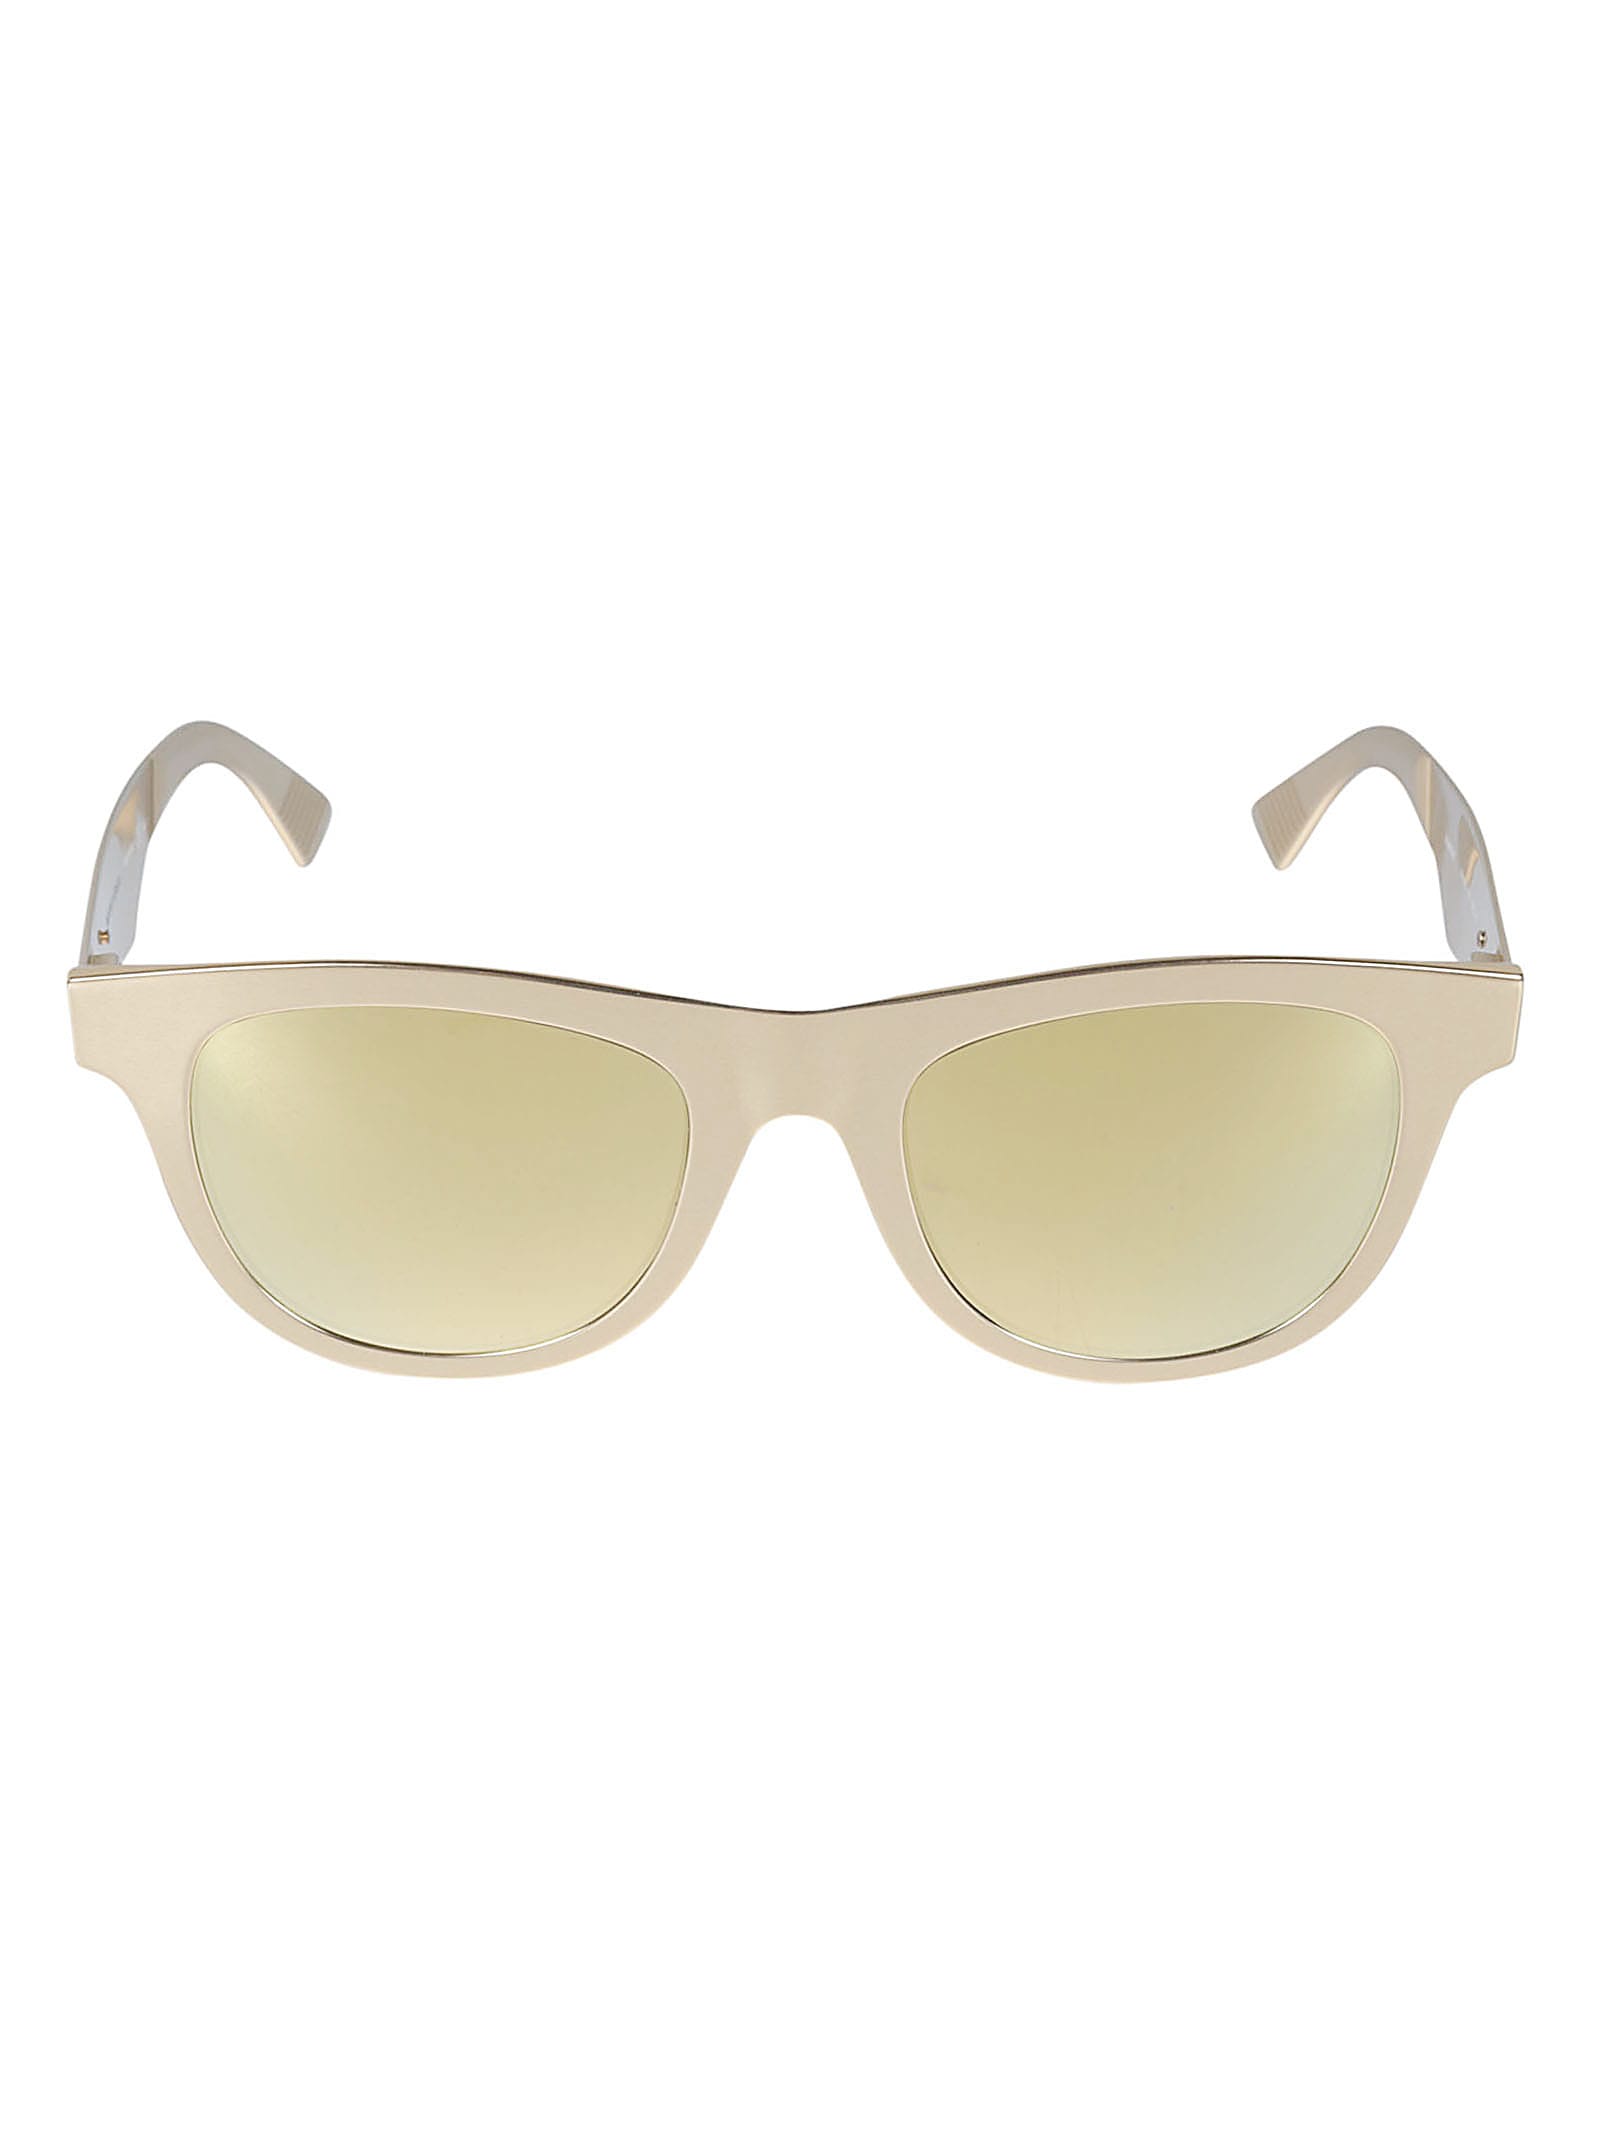 Bottega Veneta Eyewear Wayfarer Sunglasses